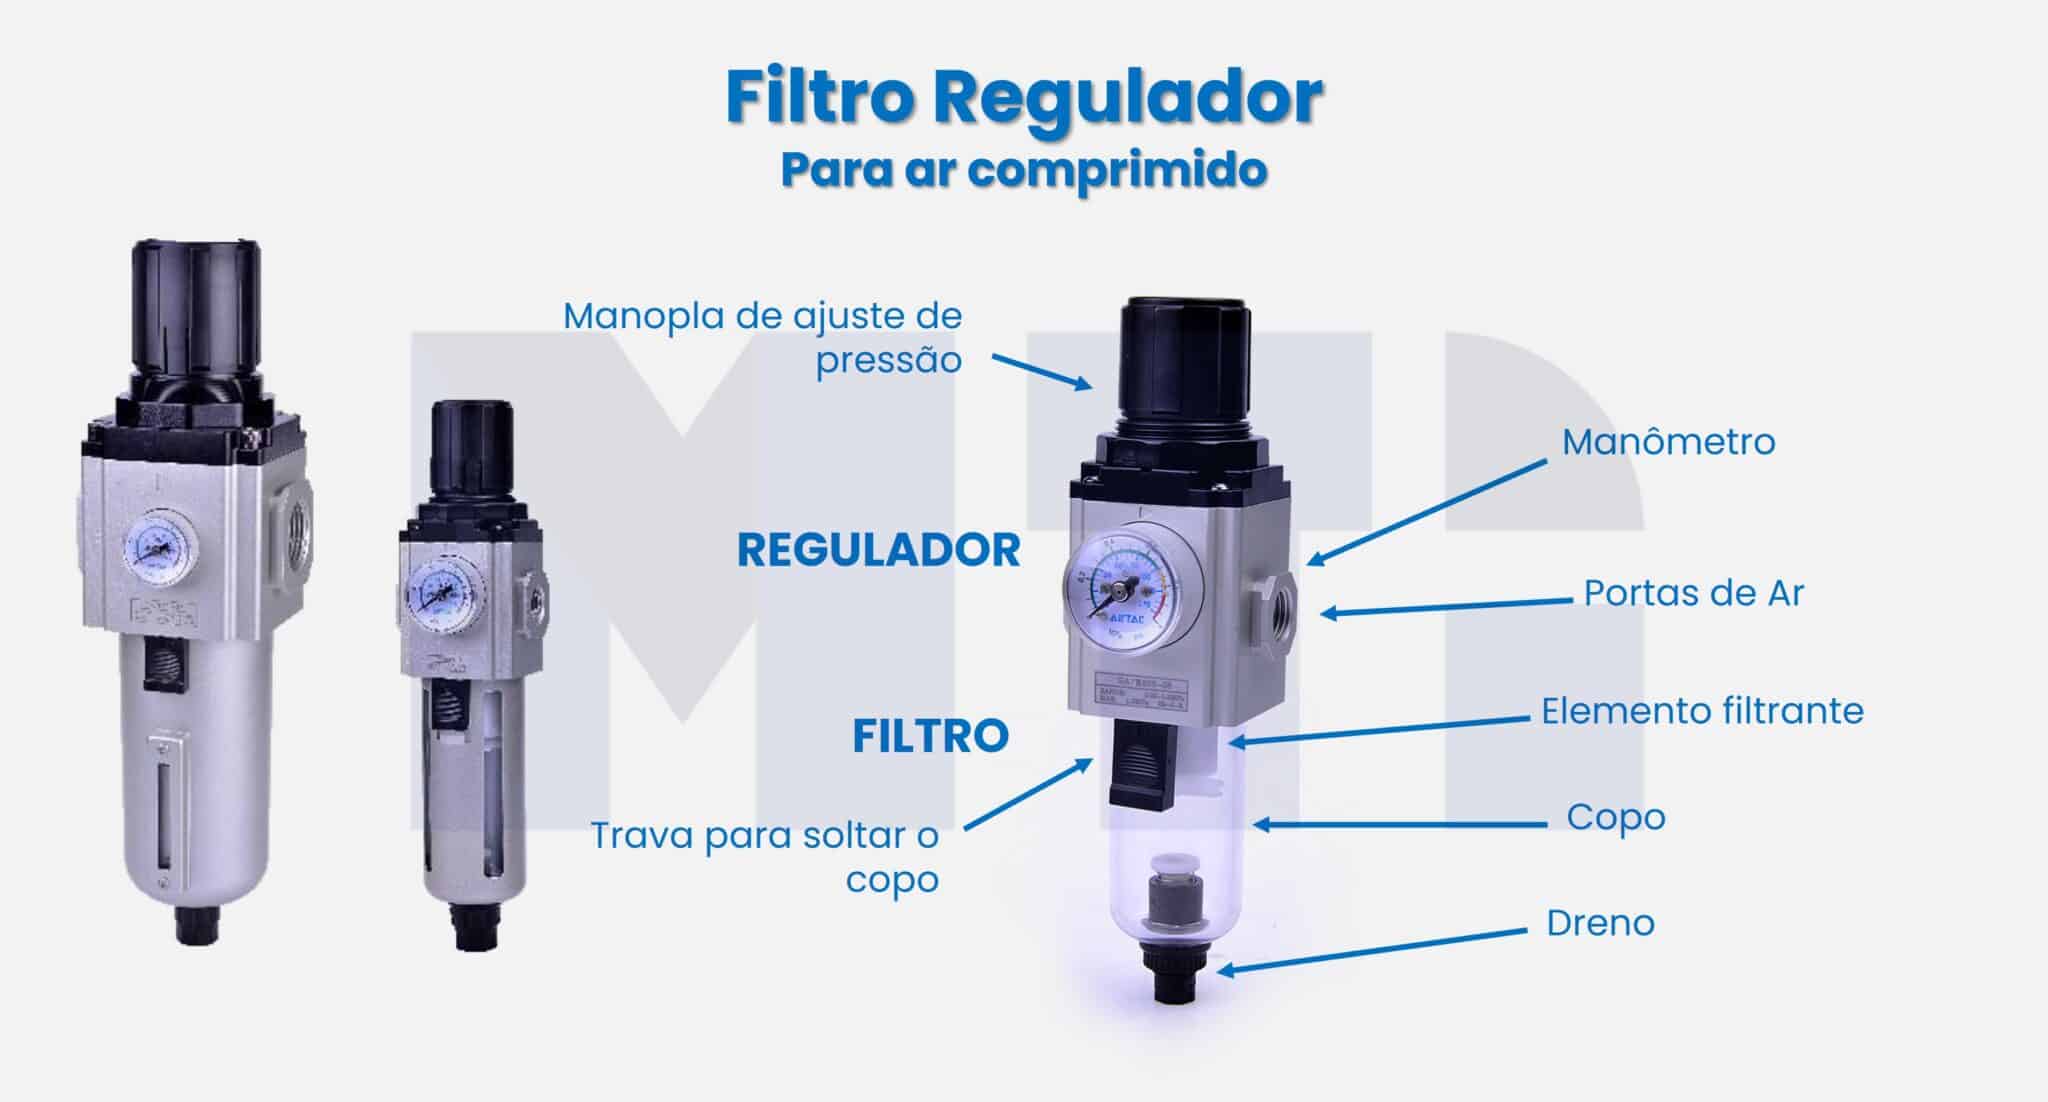 imagem das partes de um filtro regulador de ar comprimido